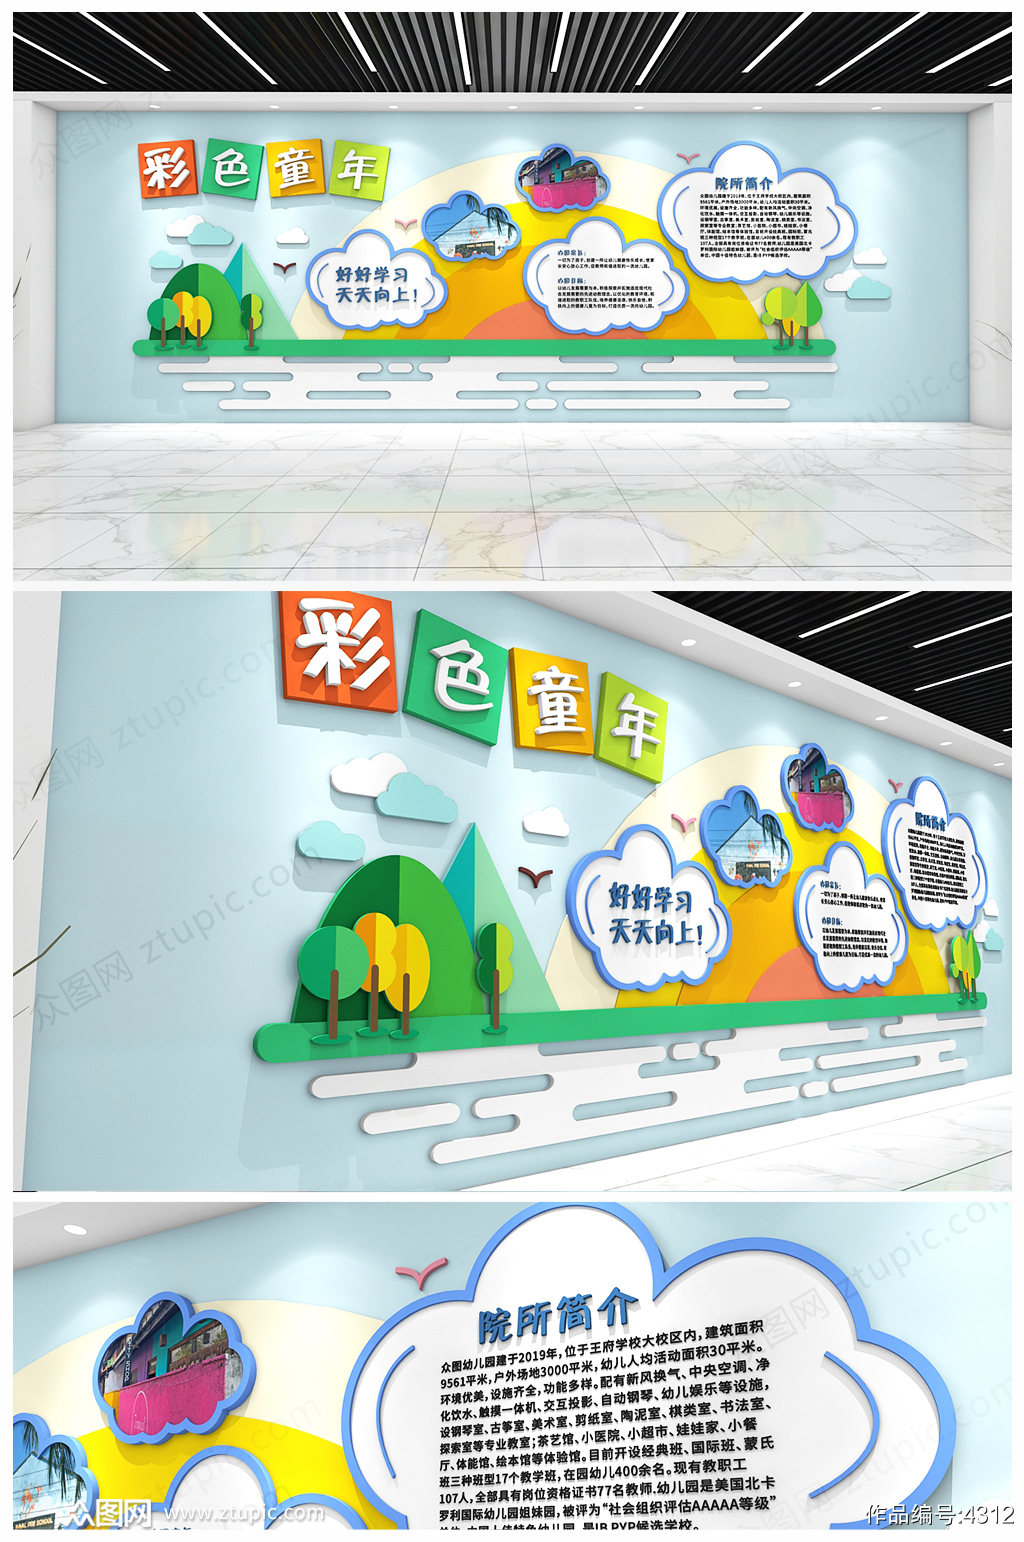 原创绿色和谐校园文化幼儿园 班级教室环创文化墙形象墙素材